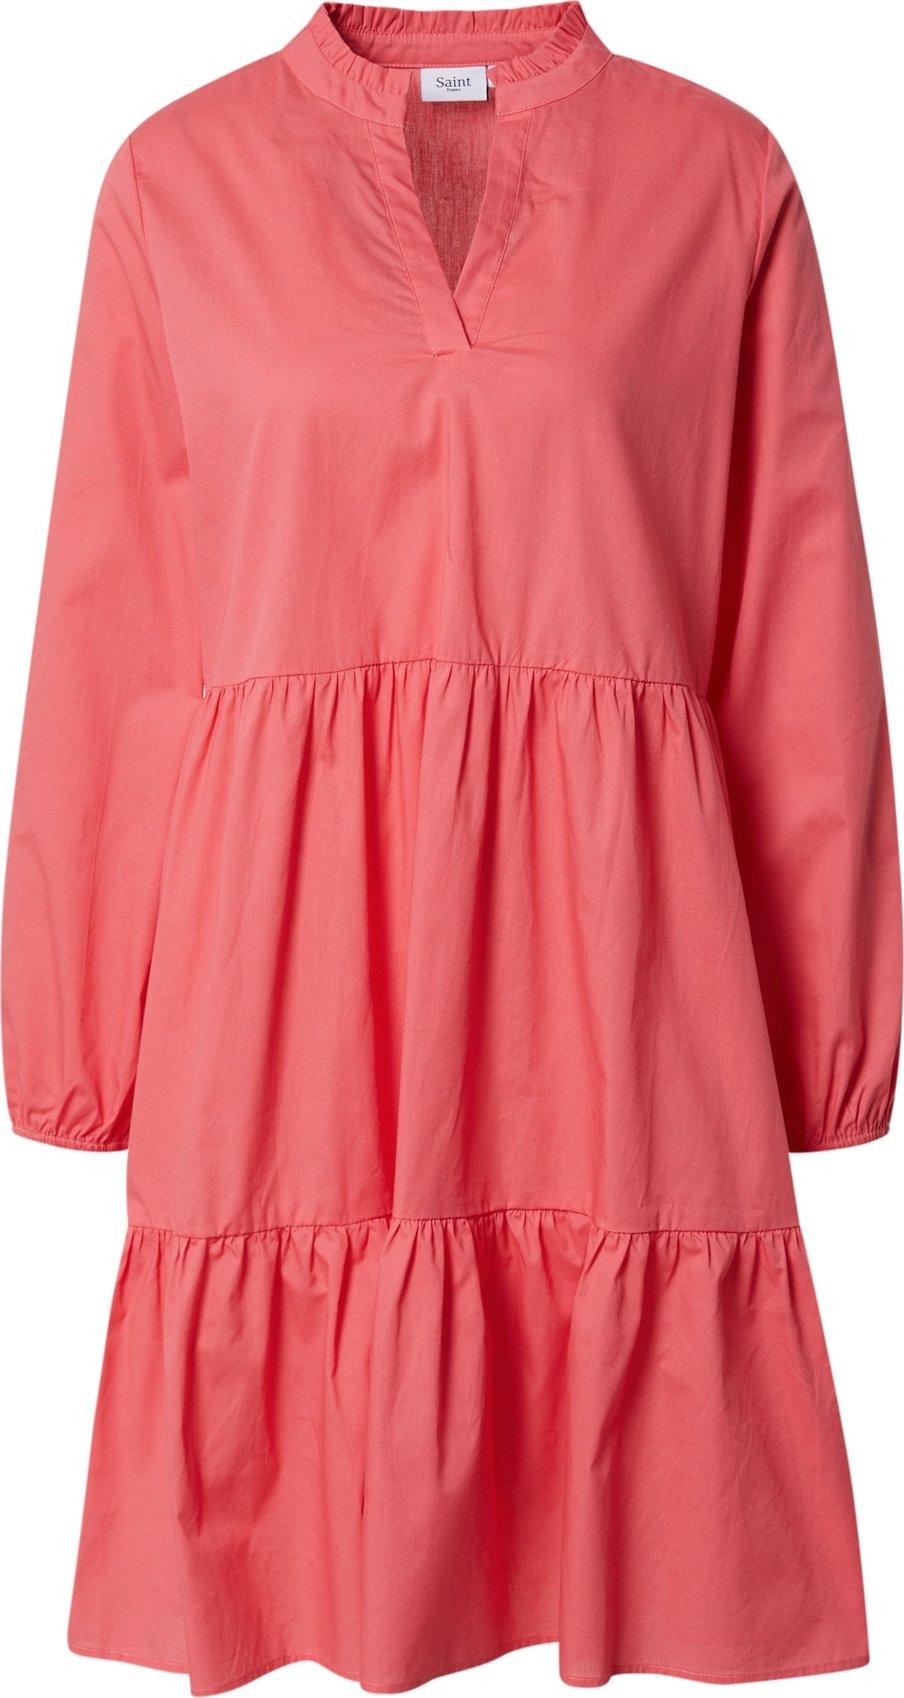 SAINT TROPEZ Košilové šaty 'Louise' pink